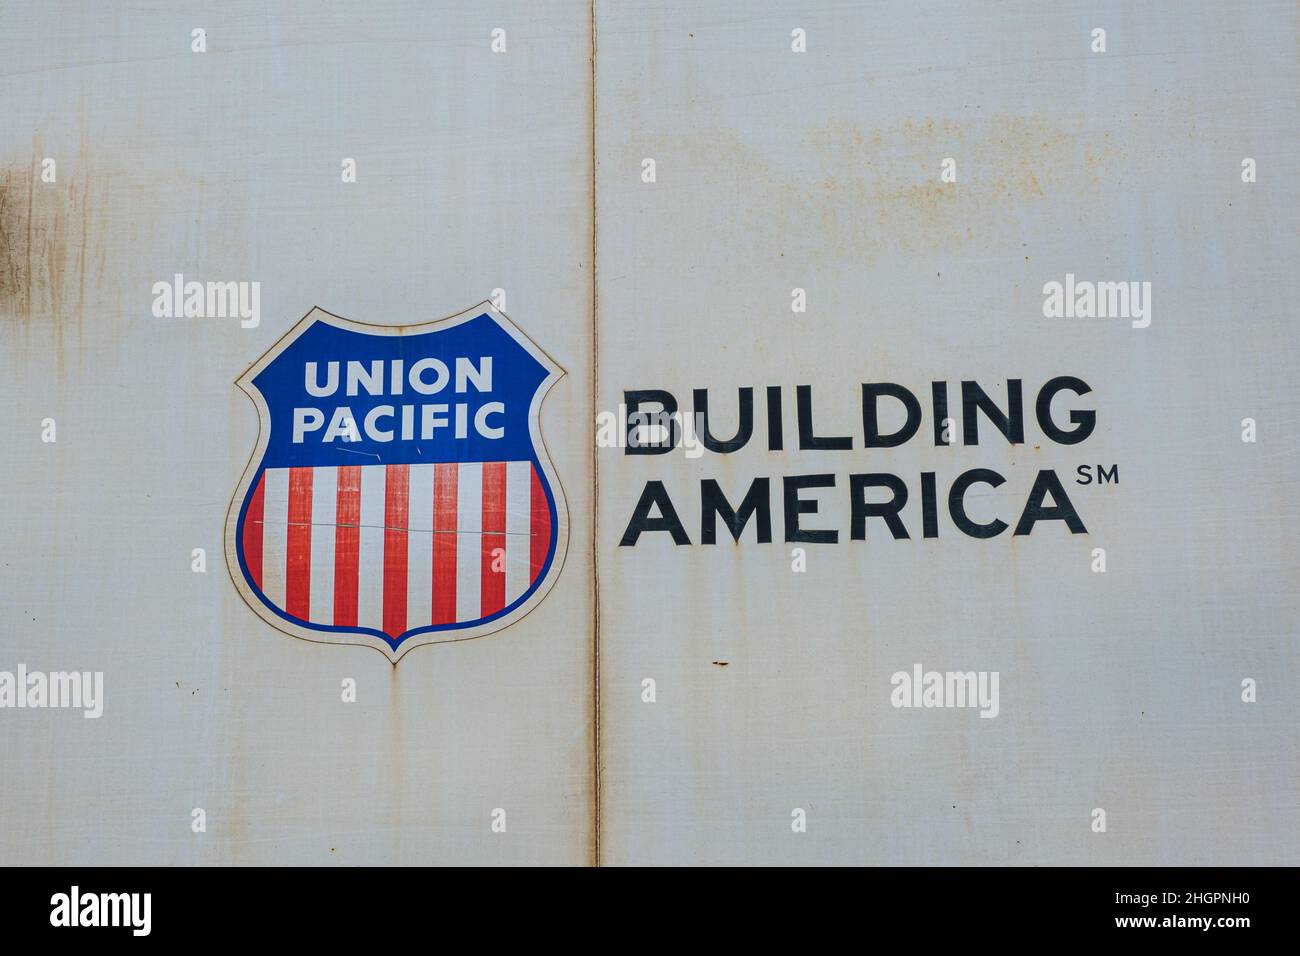 NEW ORLEANS, LA, USA - 19. JANUAR 2022: Nahaufnahme des Union Pacific Logos auf der Seite eines Kastenwagens. Stockfoto